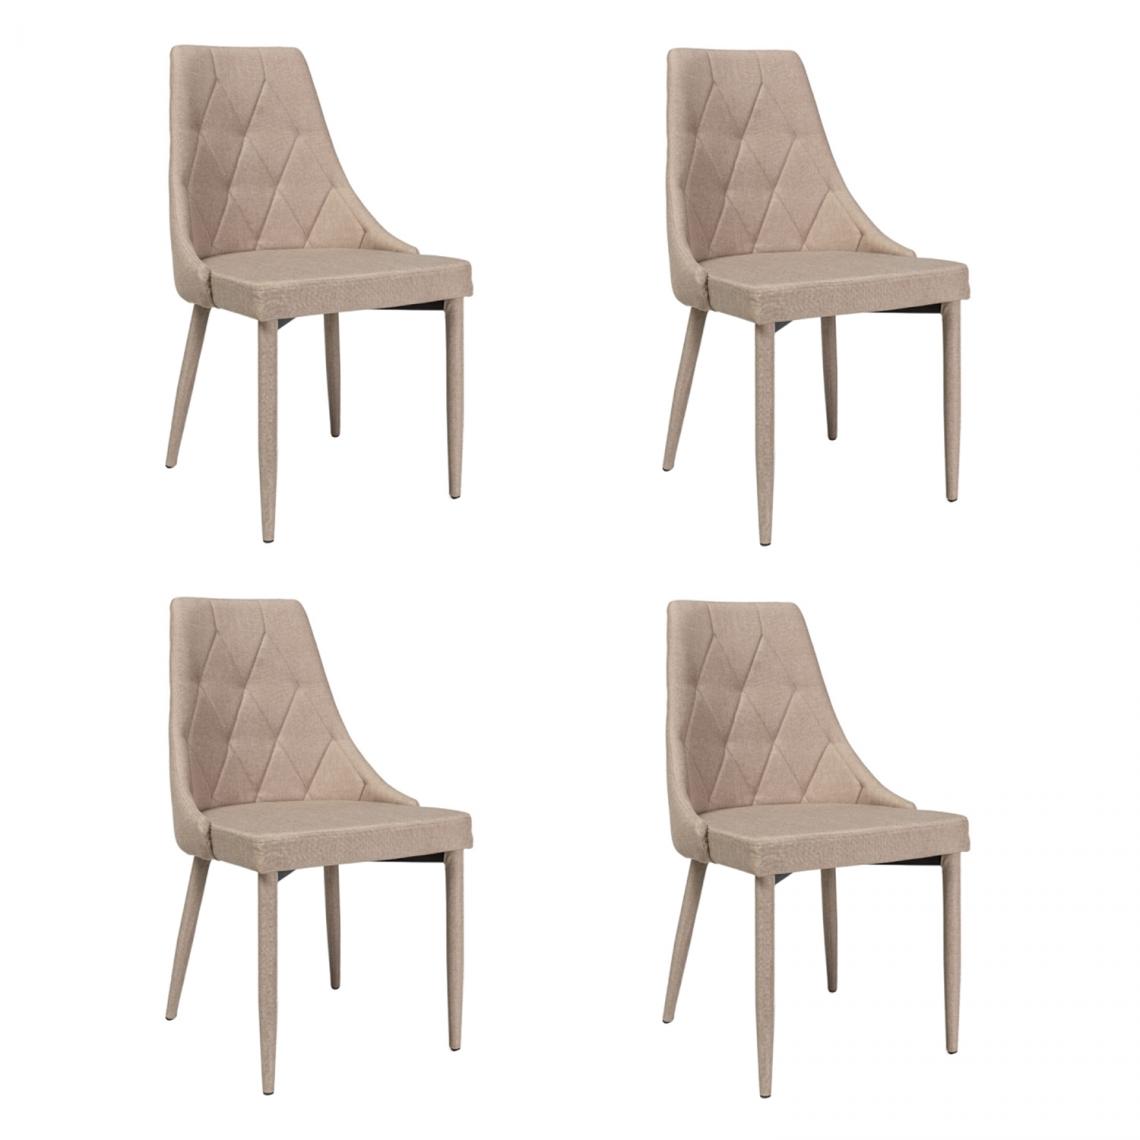 Hucoco - TRIZ - Lot de 4 chaises - Style scandinave - 88x46x46 cm - Rembourré en tissu - Structure en métal - Beige - Chaises